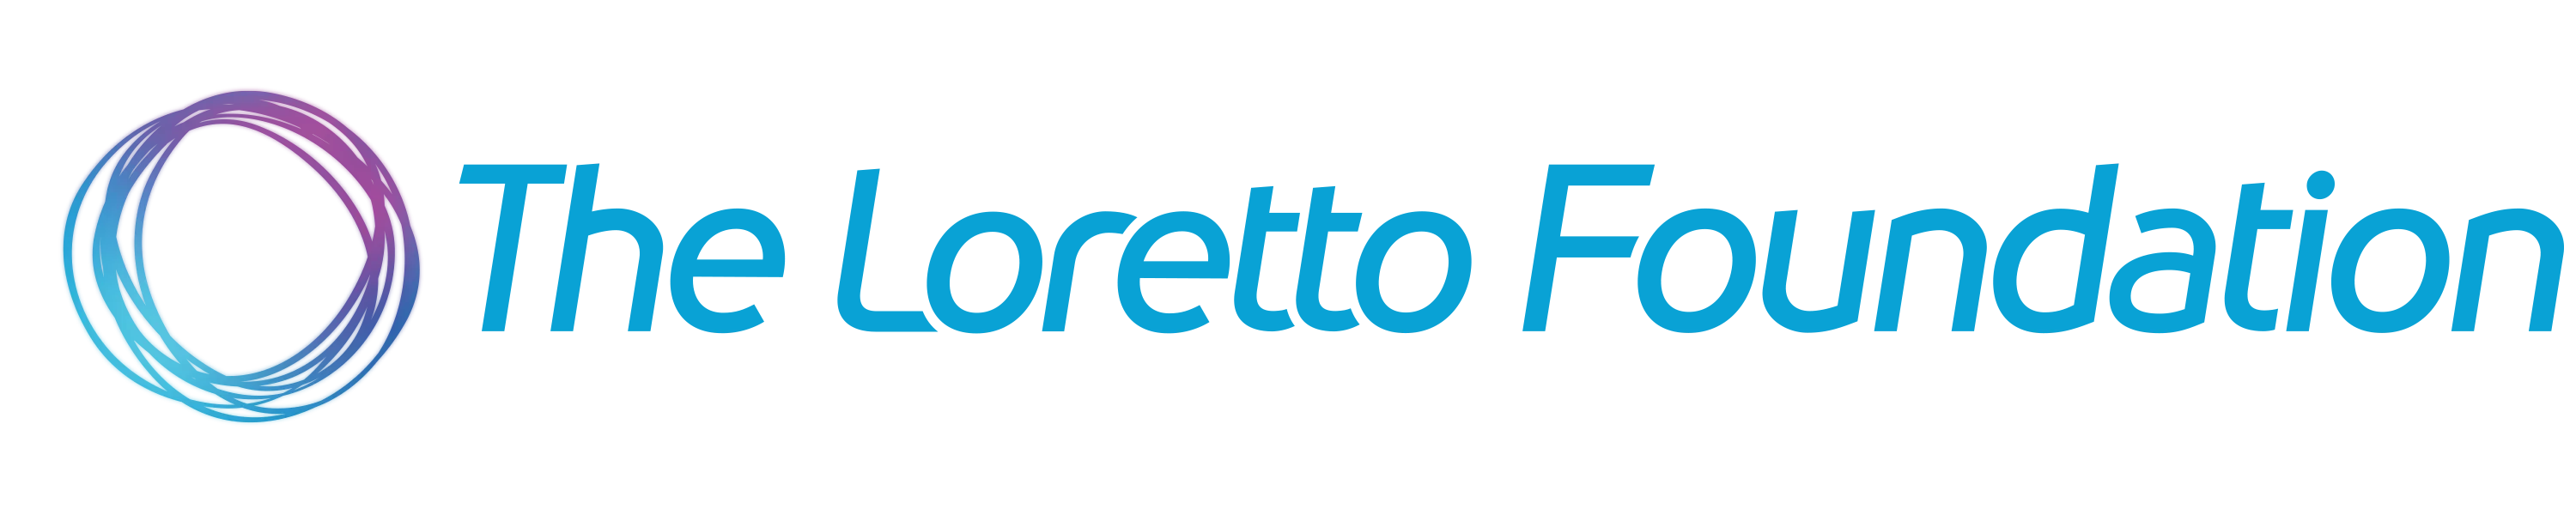 loretto-foundation-logo